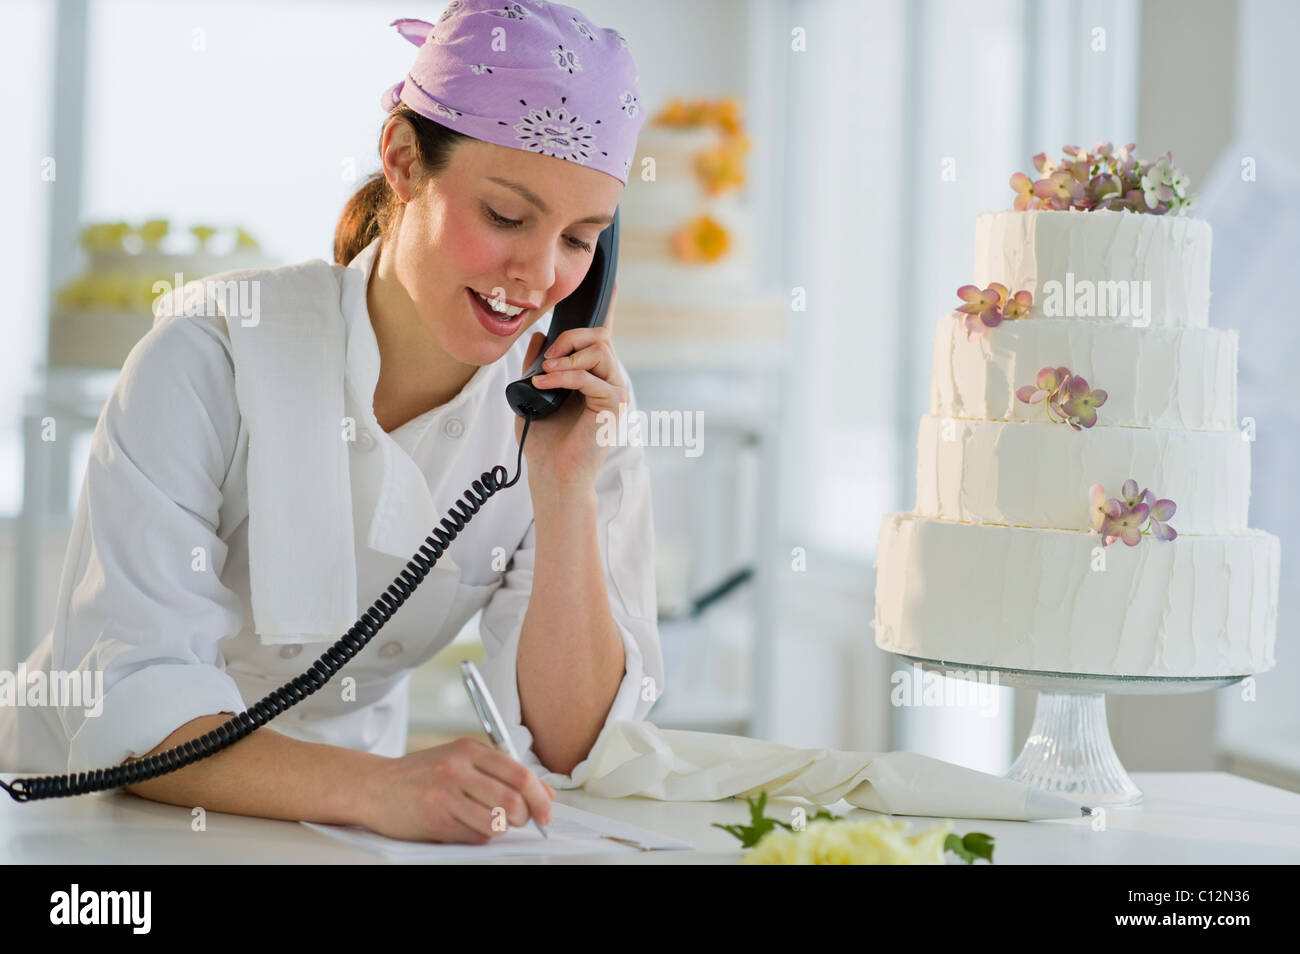 USA, New Jersey, Jersey City, Happy young woman taking order près de gâteau de mariage Banque D'Images